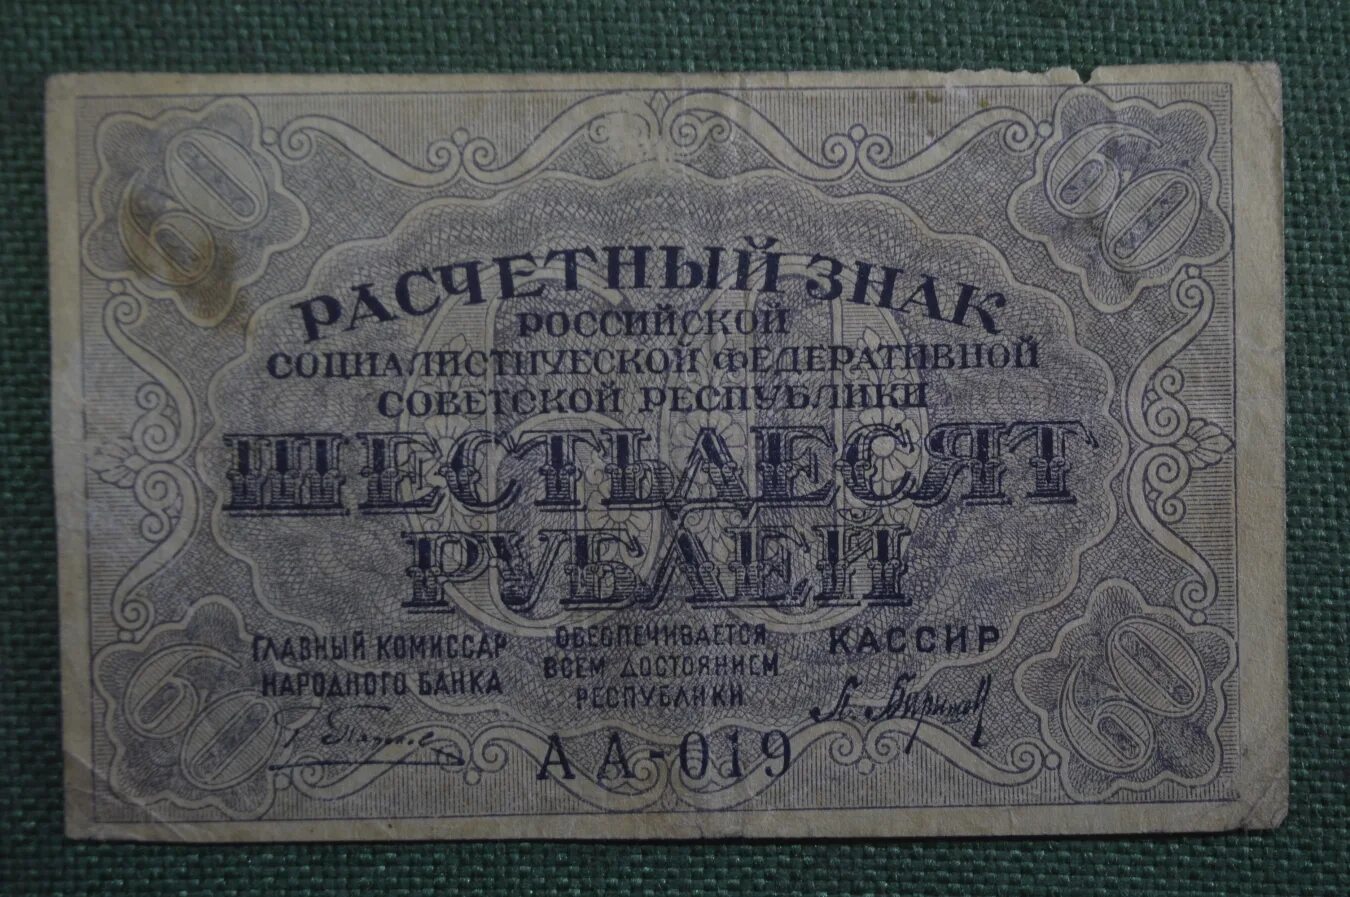 60 купюр. 60 Рублей 1919 года. Банкноты 1919 года. Расчетный знак 60 рублей. Купюра 60 рублей.